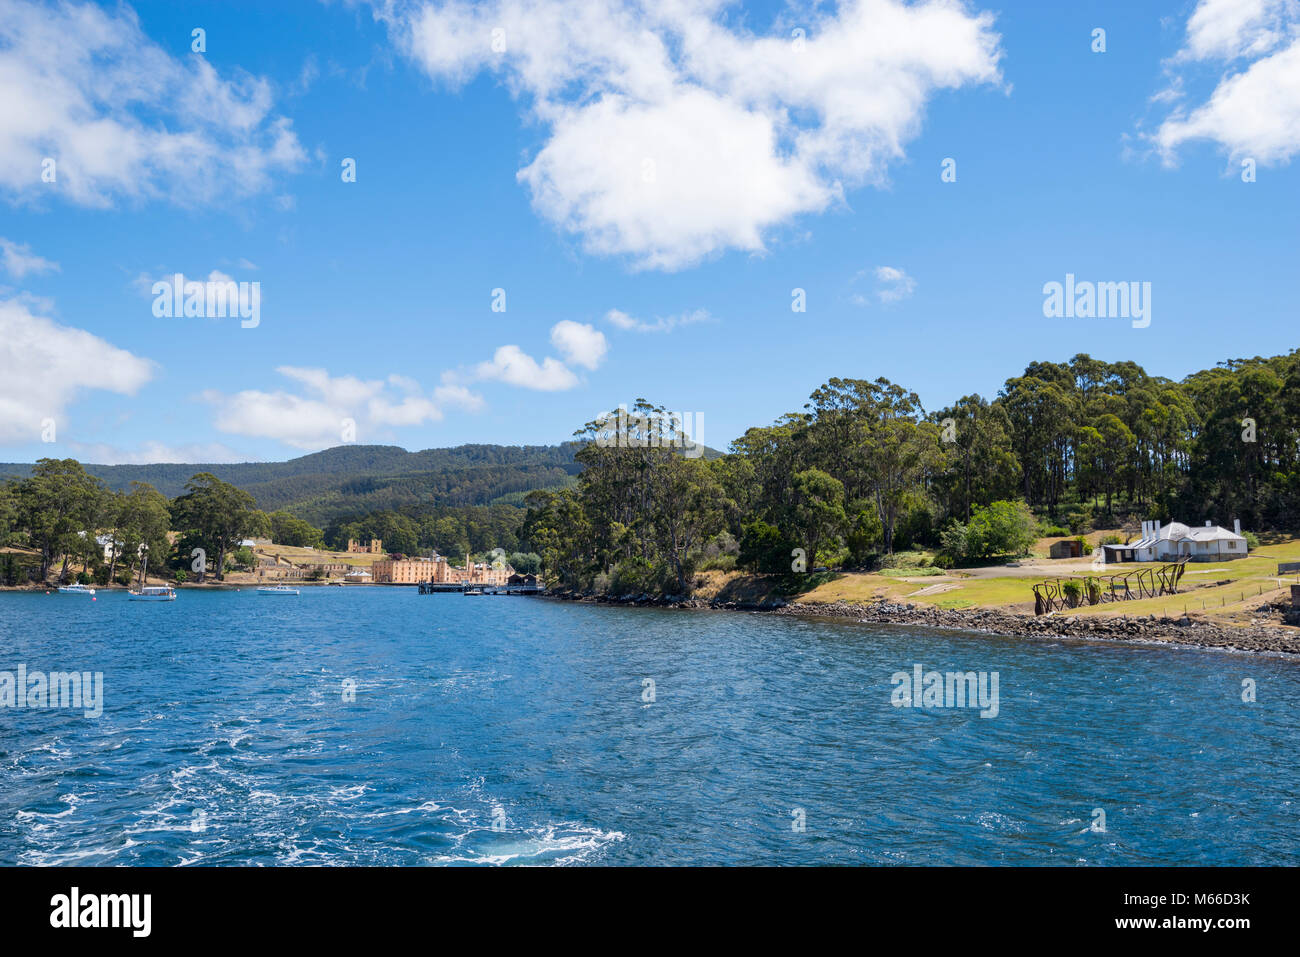 World Heritage listed convict site at Port Arthur, Tasmania, Australia Stock Photo